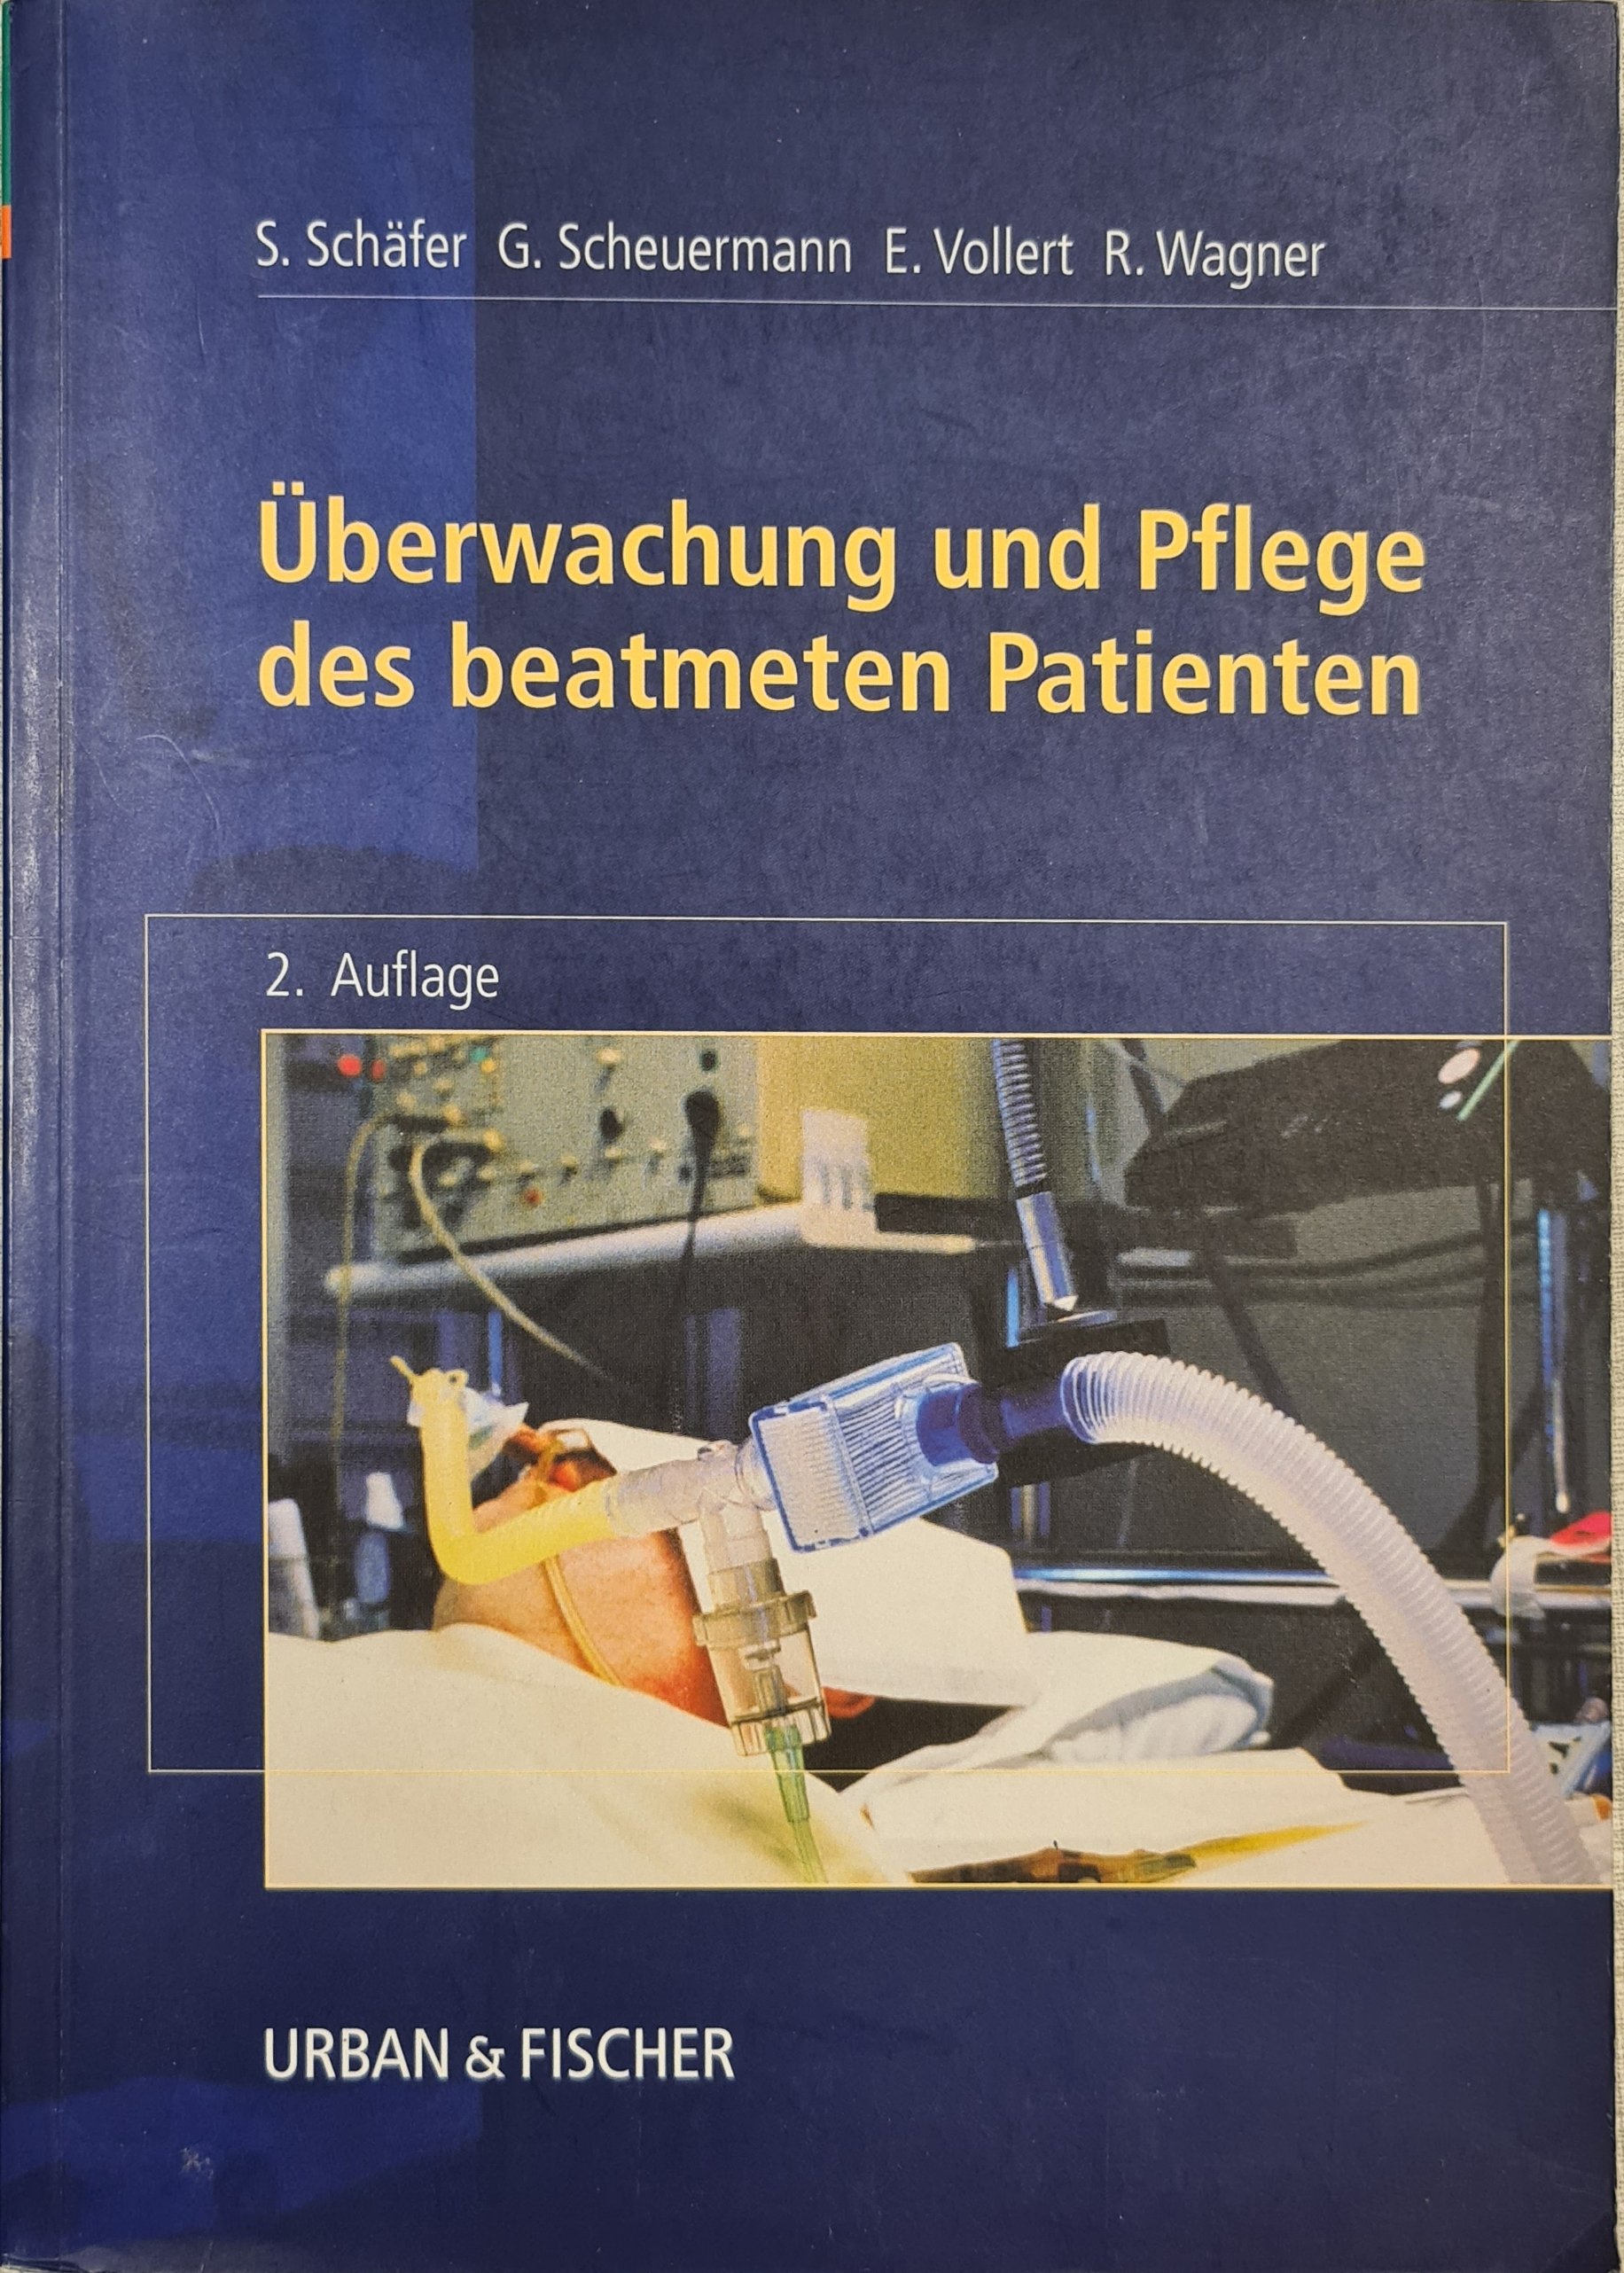 Überwachung und Pflege des beatmeten Patienten (Krankenhausmuseum Bielefeld e.V. CC BY-NC-SA)